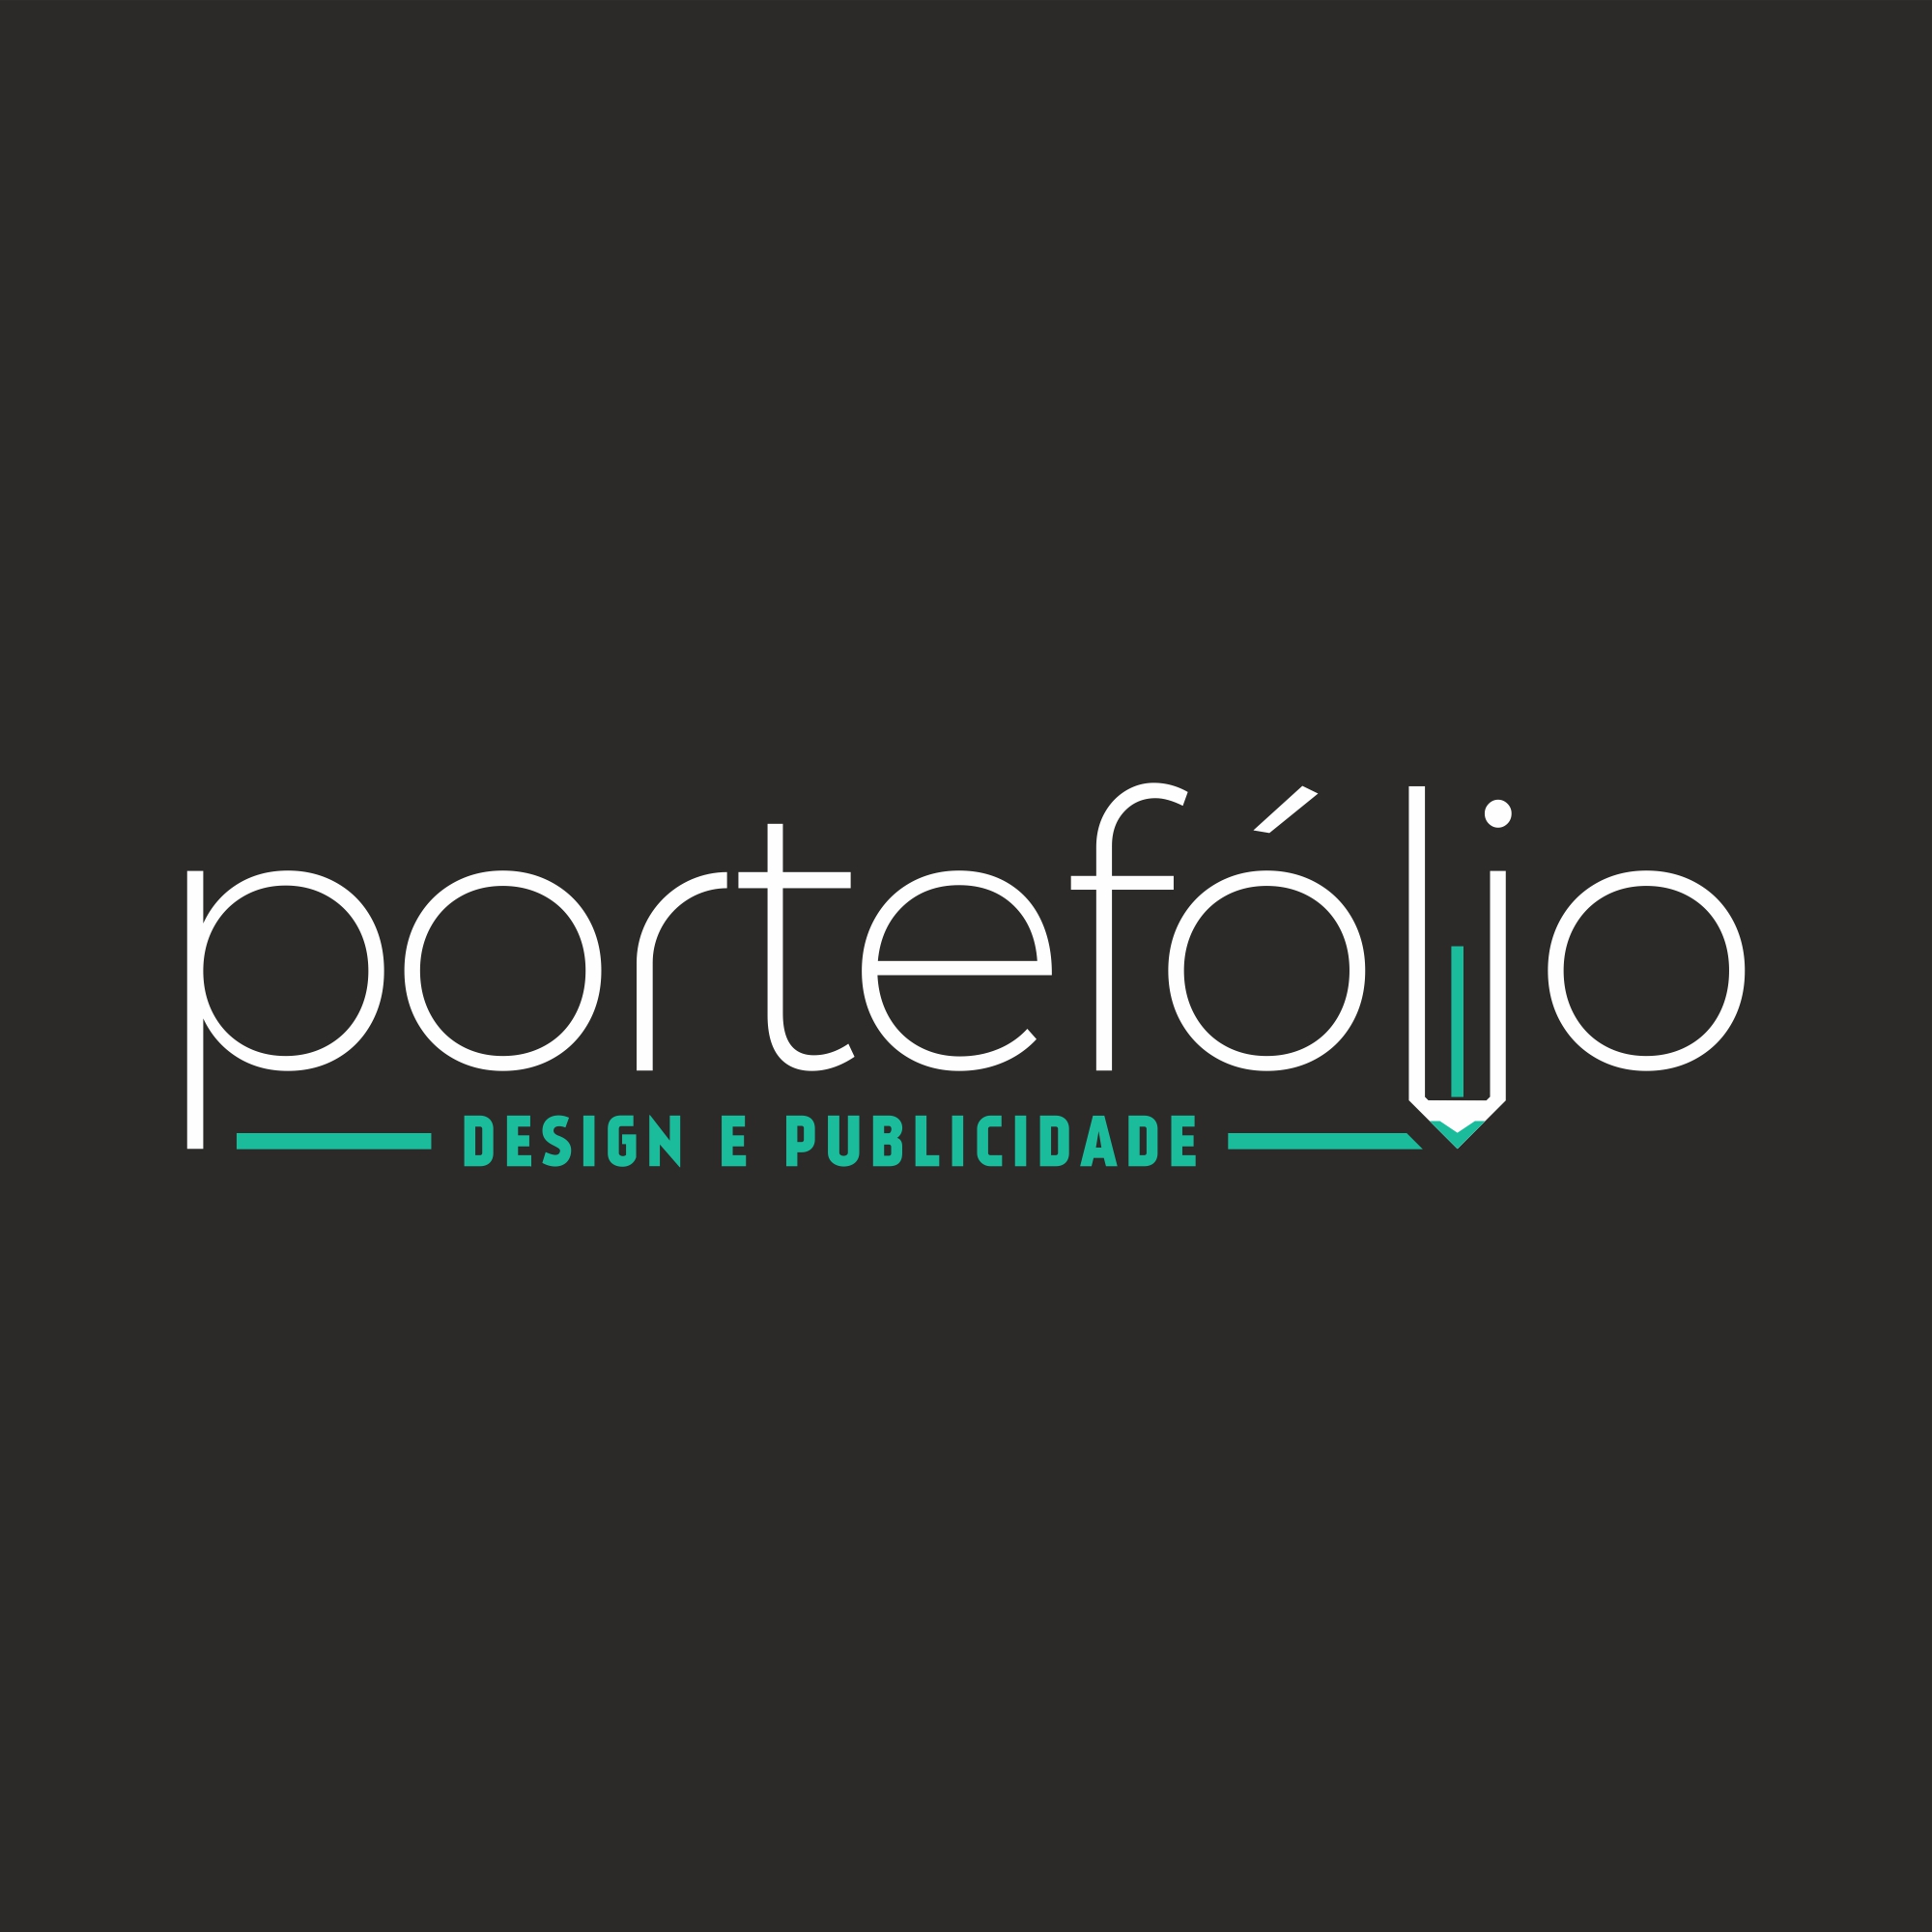 Portefólio - Design e Publicidade